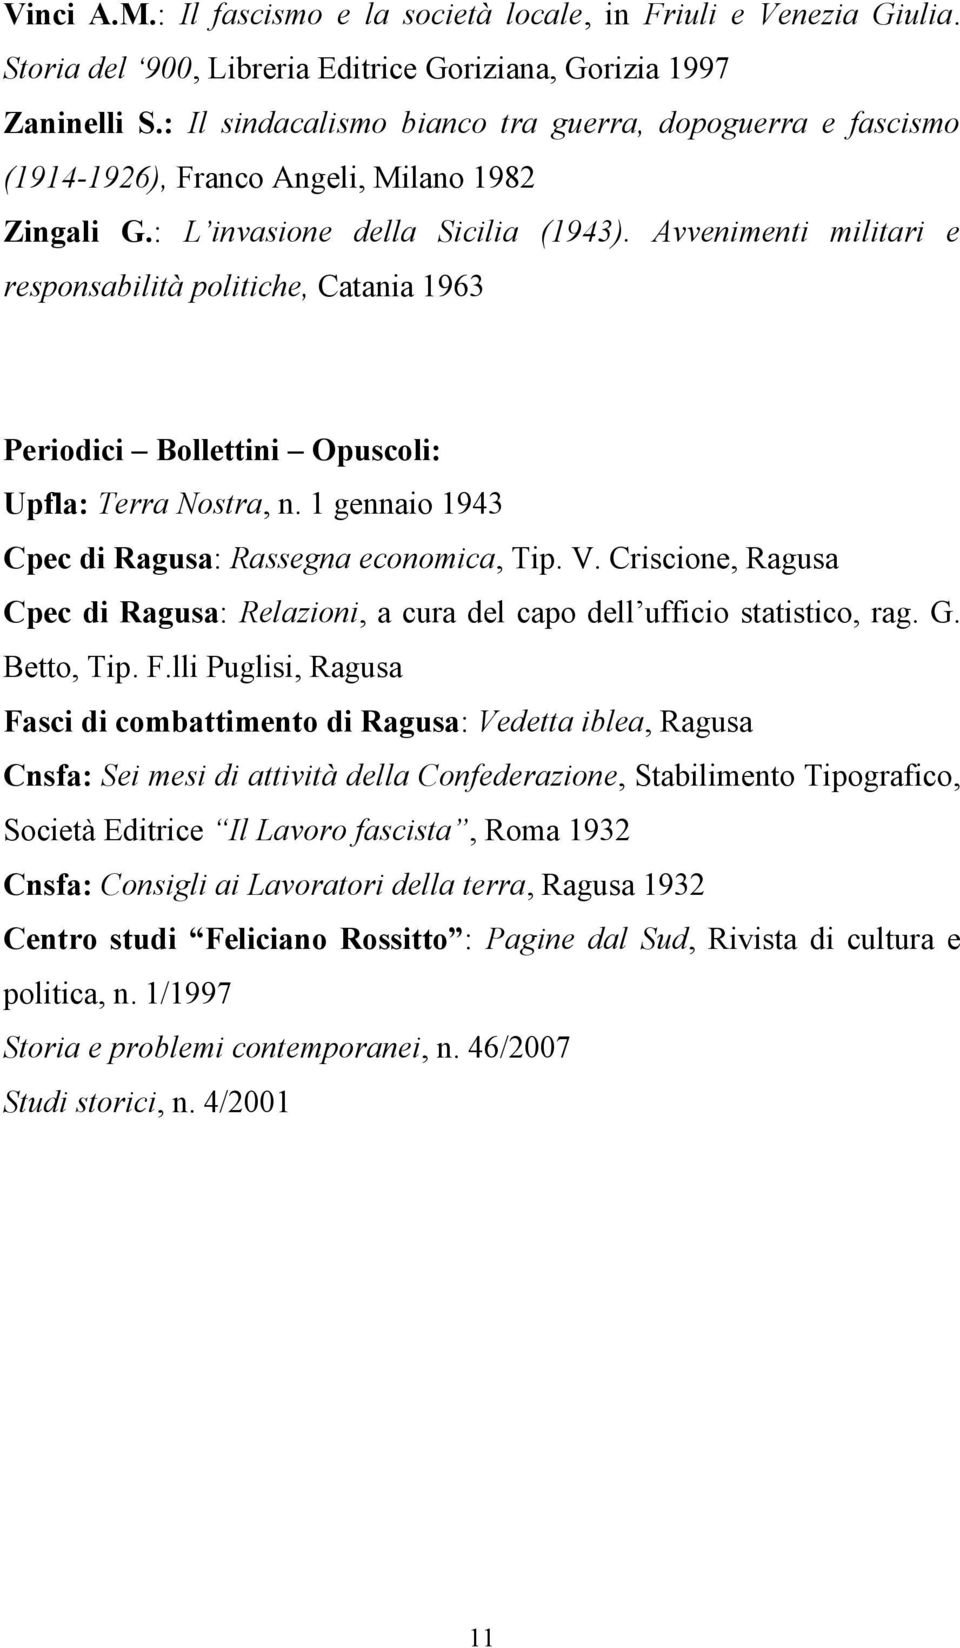 Avvenimenti militari e responsabilità politiche, Catania 1963 Periodici Bollettini Opuscoli: Upfla: Terra Nostra, n. 1 gennaio 1943 Cpec di Ragusa: Rassegna economica, Tip. V.